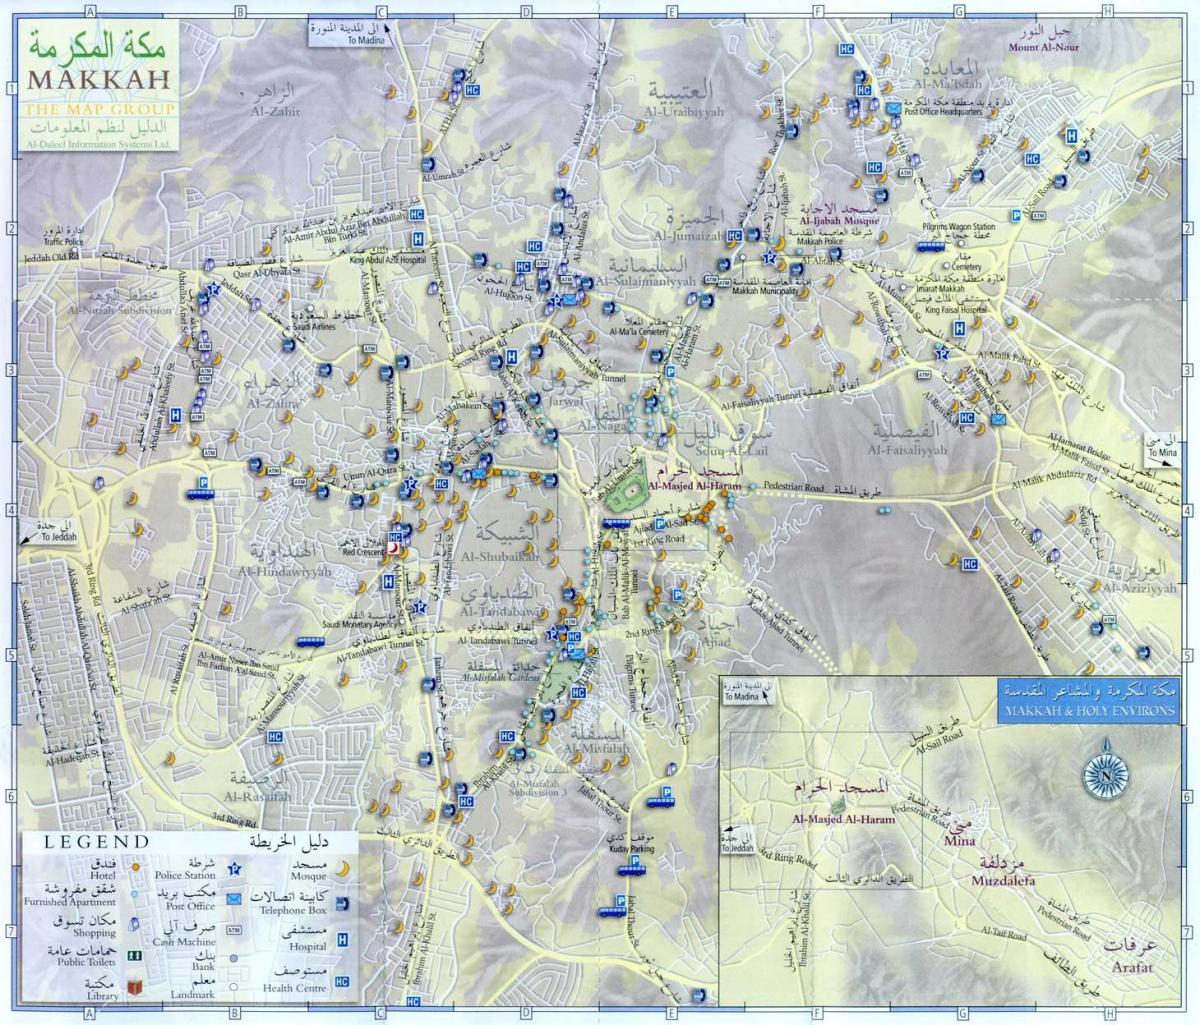  خريطة مكة المكرمة لزيارة الأماكن